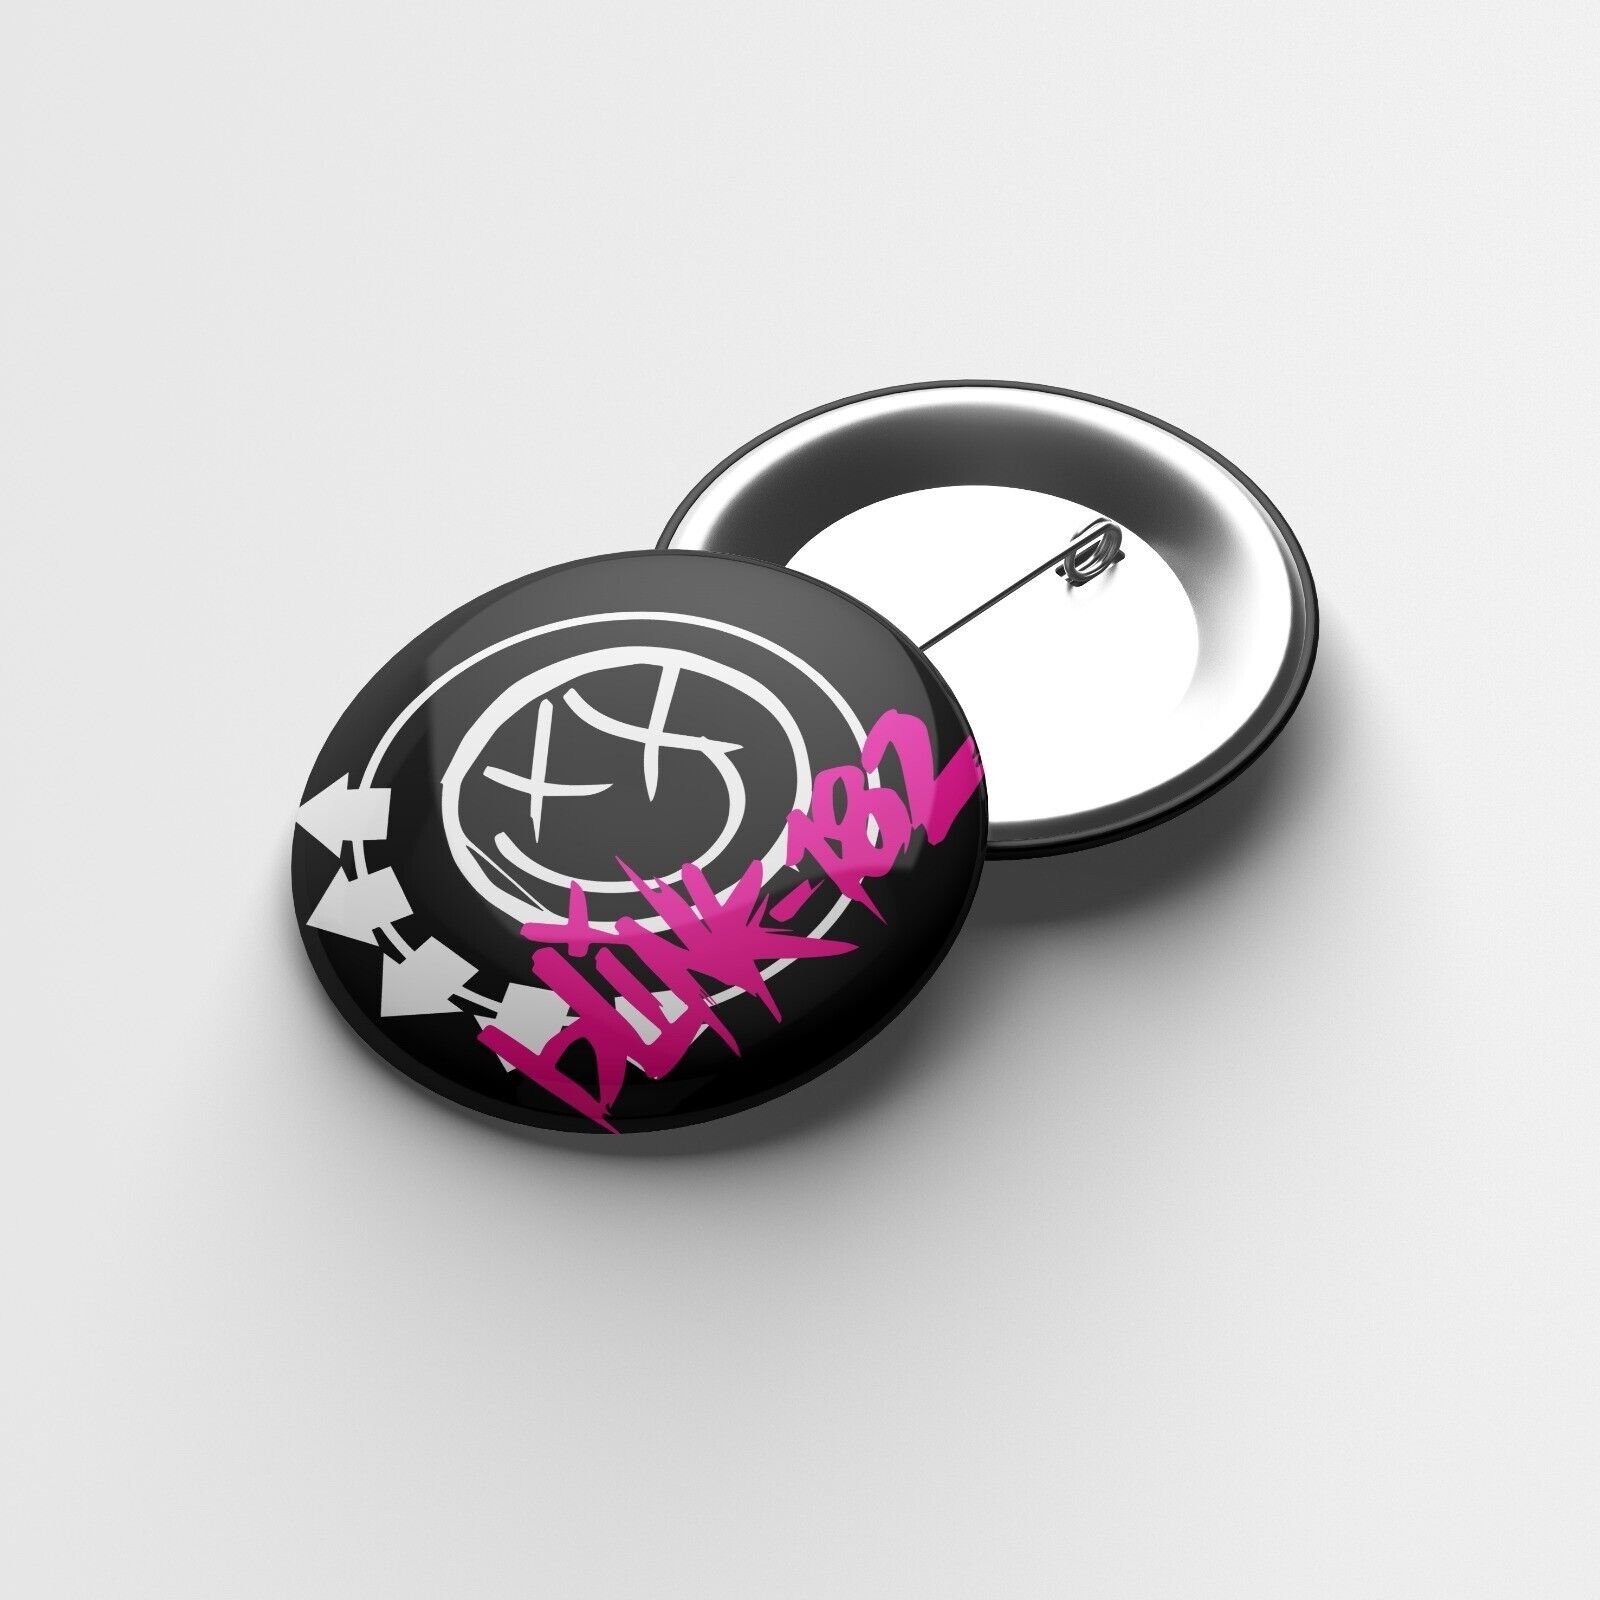 Blink-182 Six Arrow Smiley Music, Fan, Merchandise, Gift, 25mm Badge